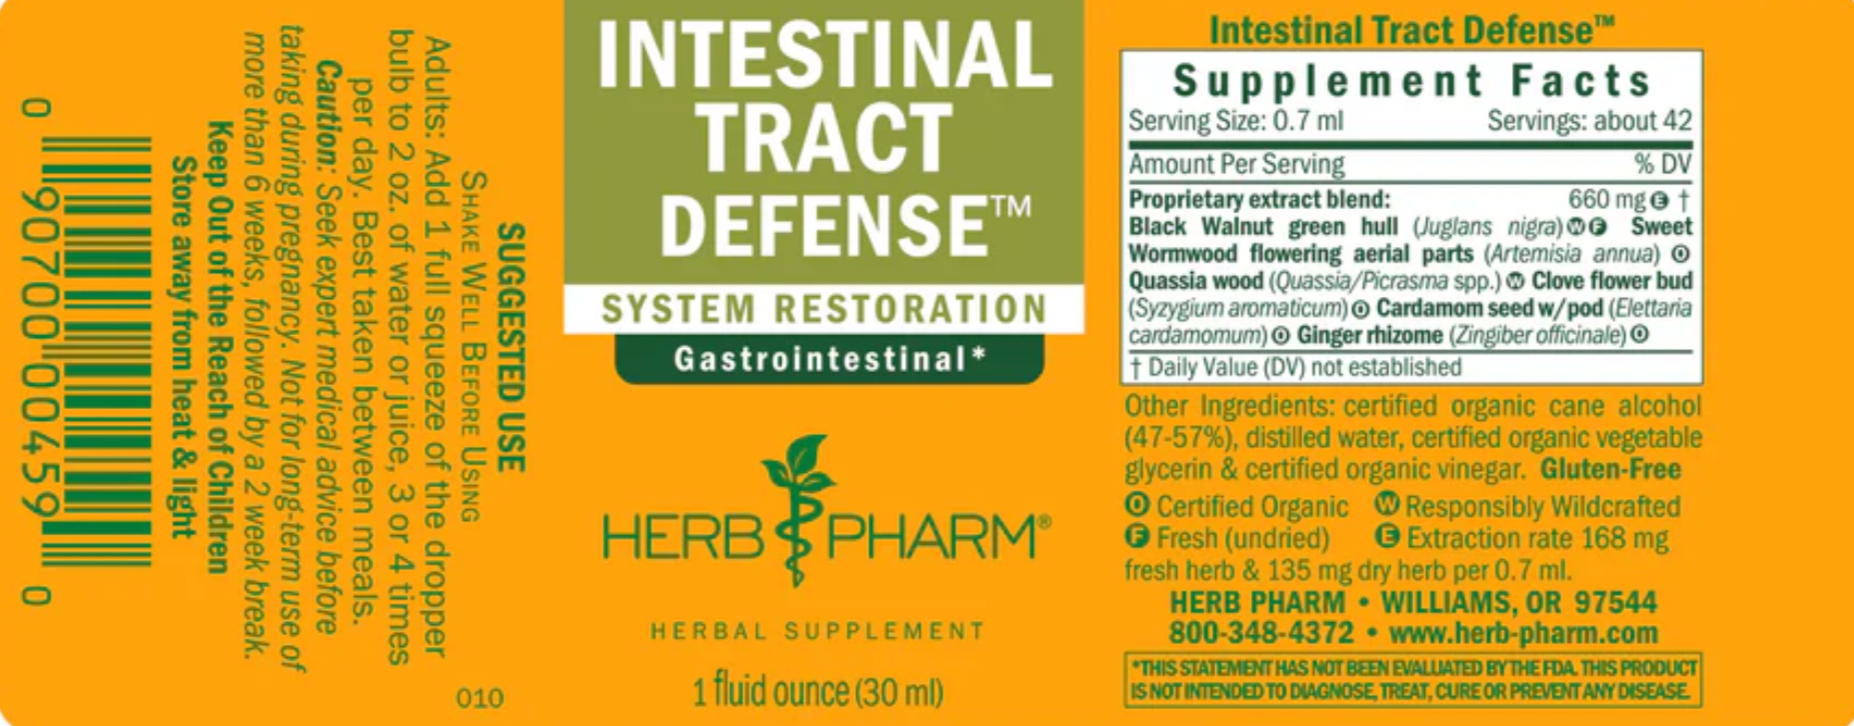 Intestinal Tract Defense